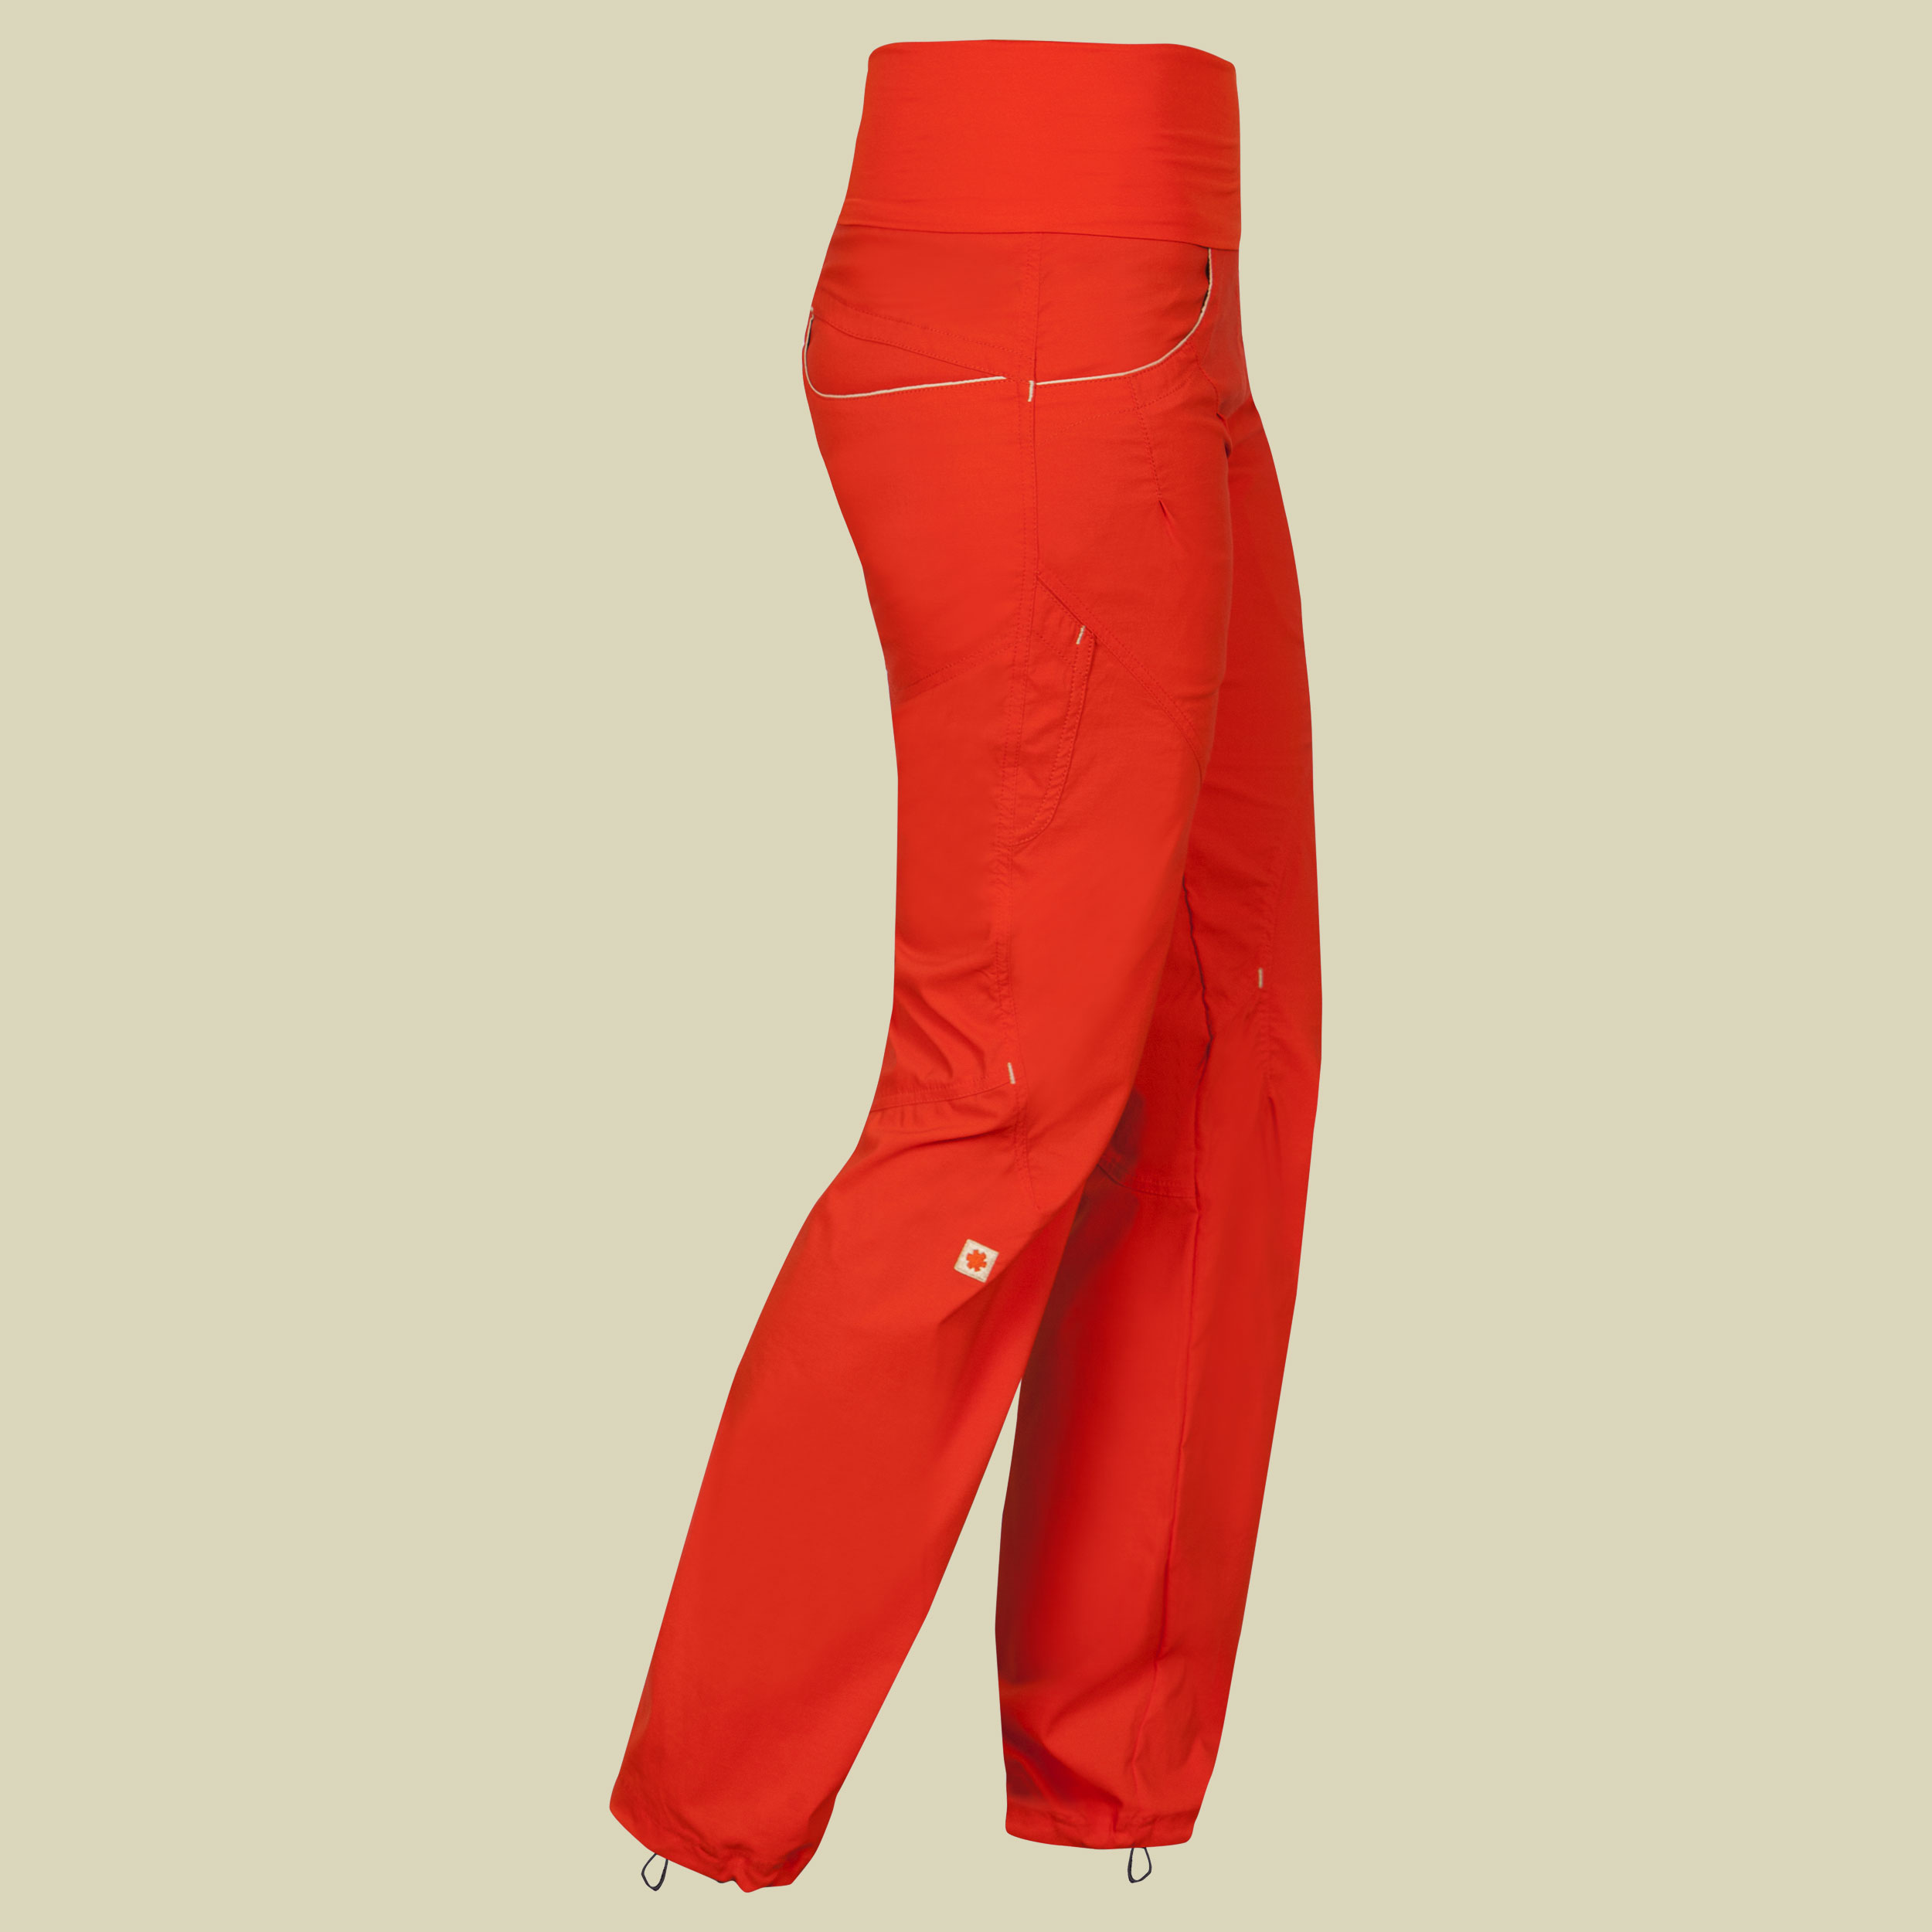 Noya Pants Women Größe XS Farbe orange poinciana